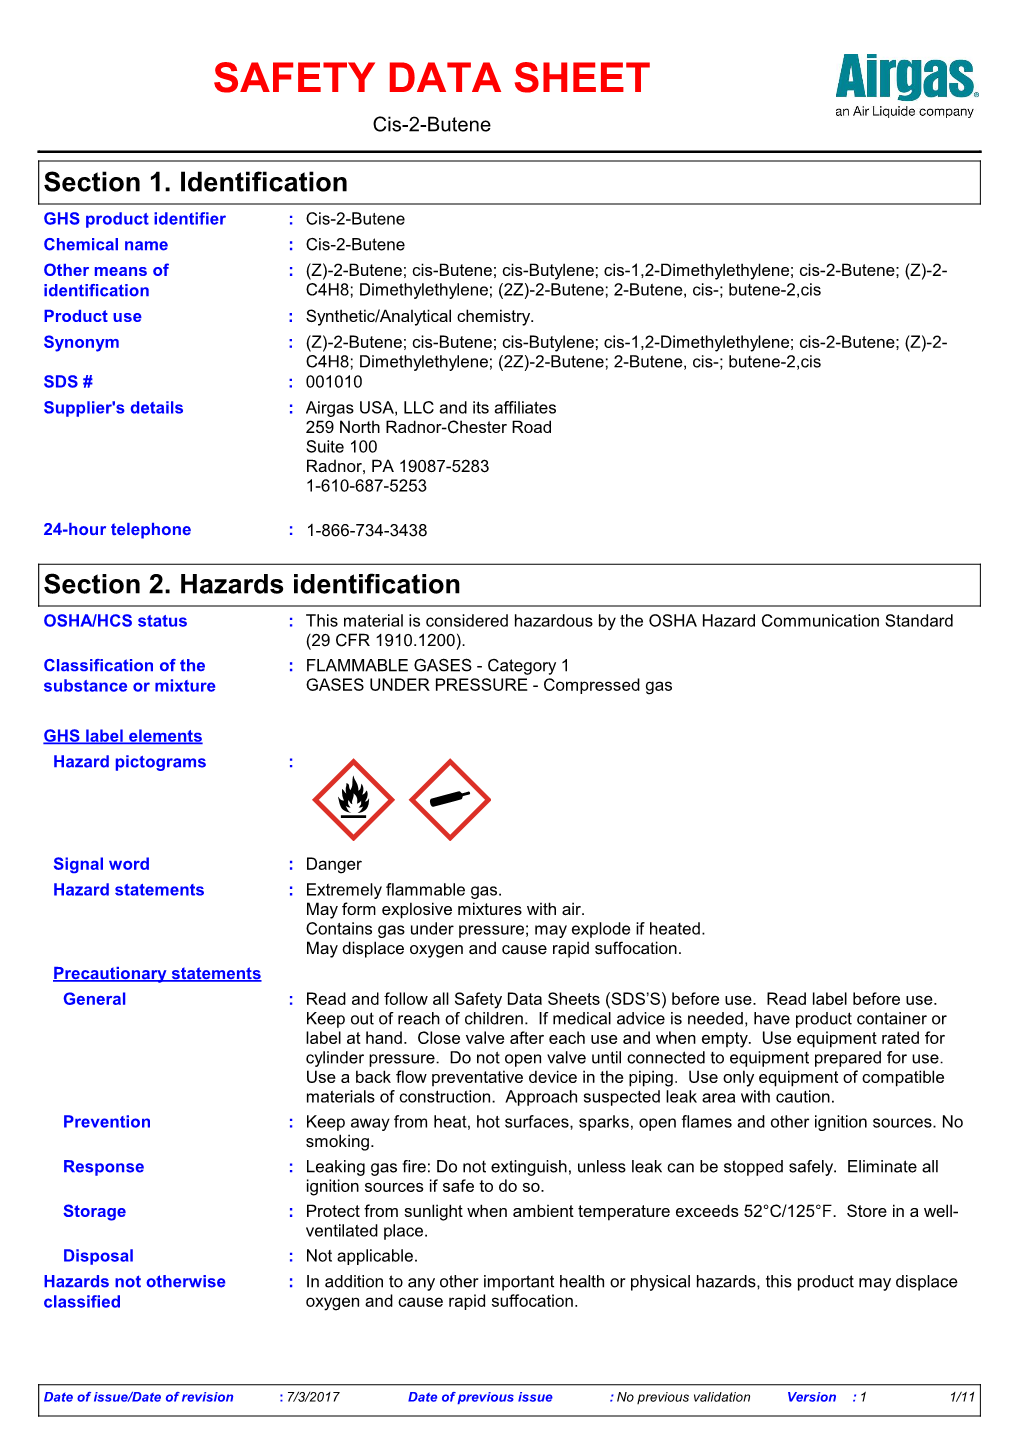 SAFETY DATA SHEET Cis-2-Butene